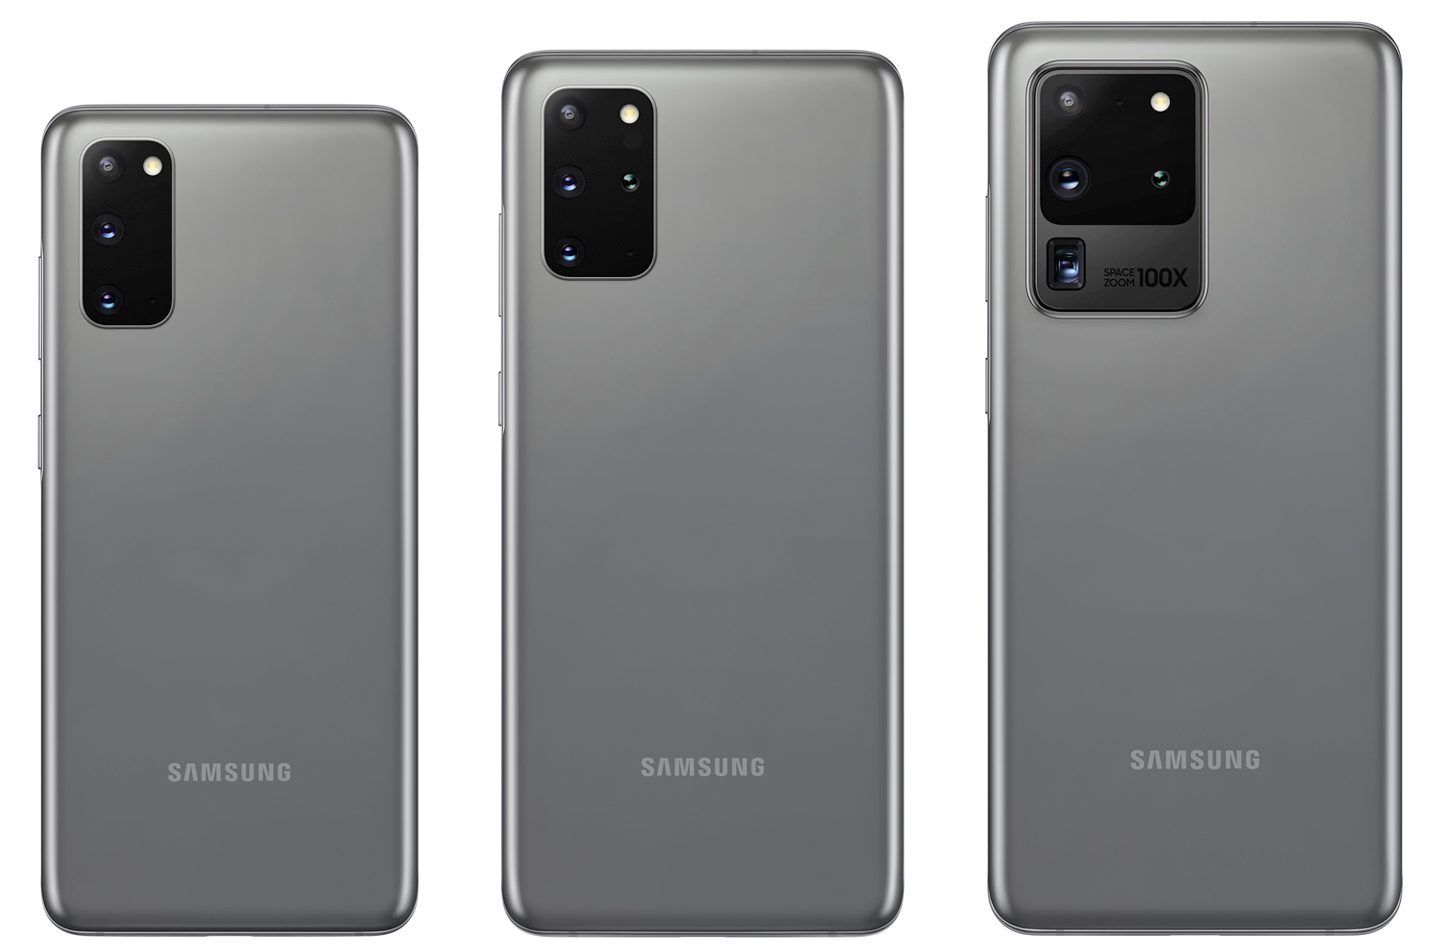 Samsung Galaxy S20-seriens amerikanske priser afsløret